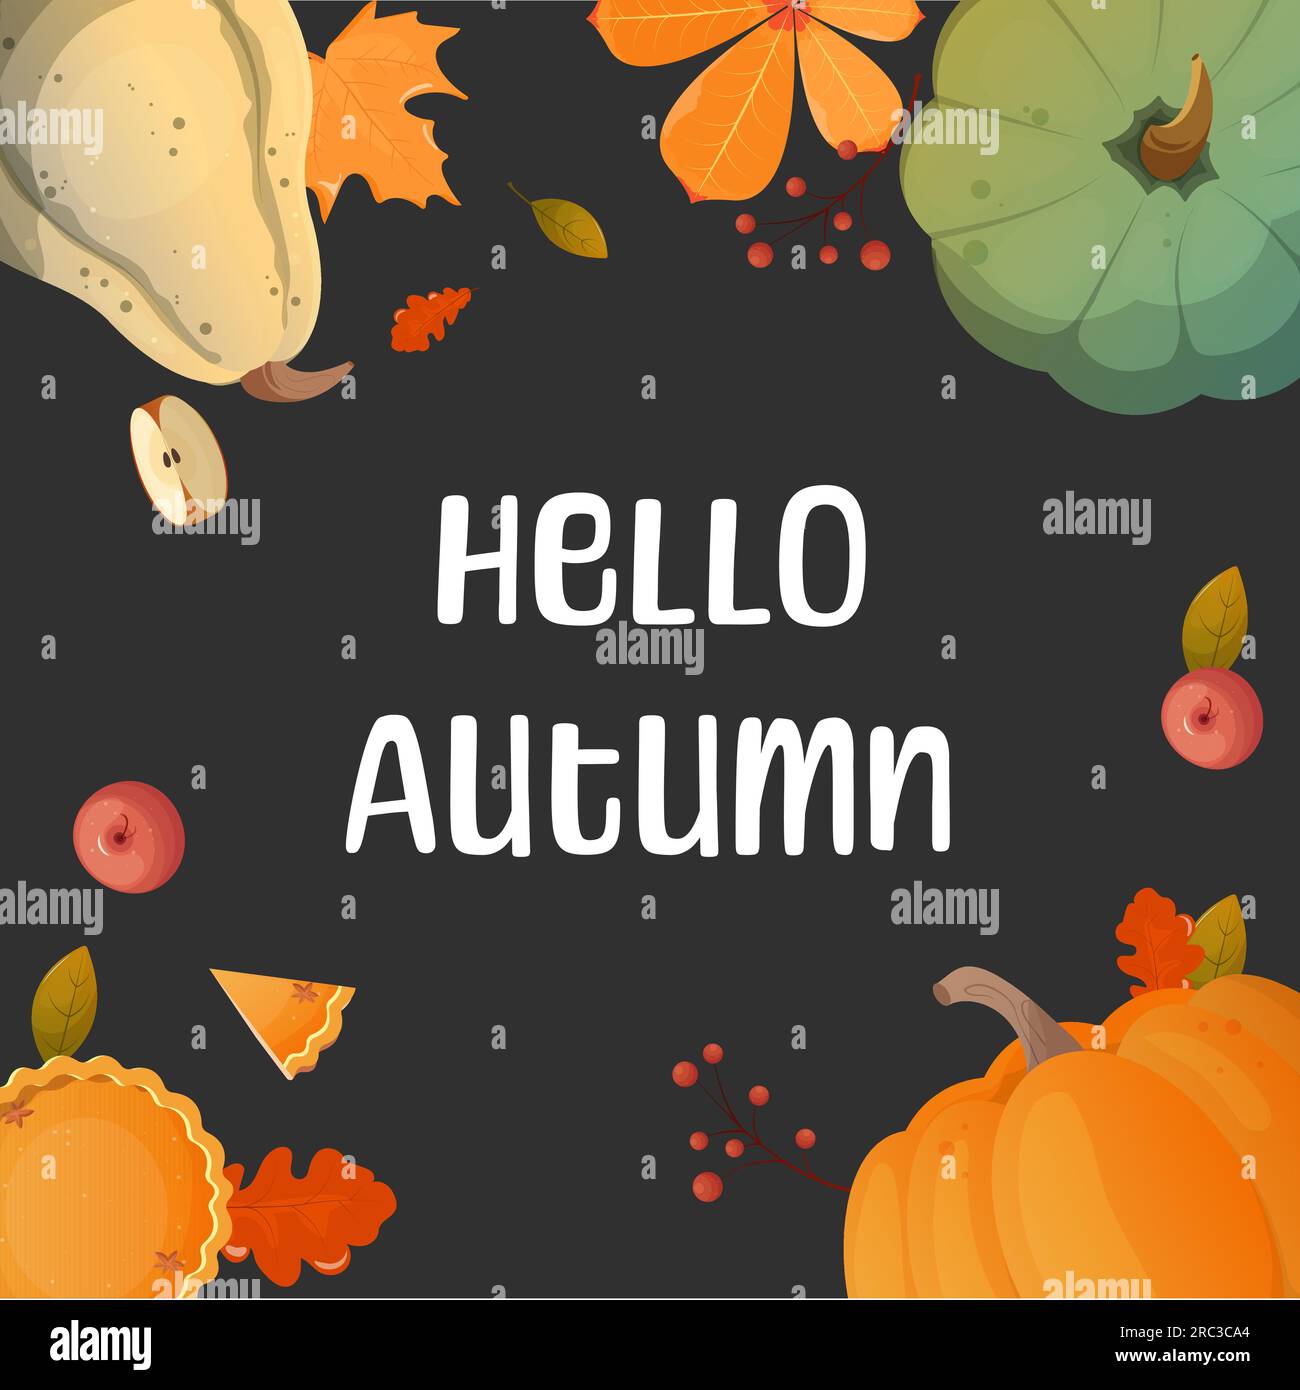 Hello Autumn. Vector set of elements background. Pumpkin, apple, pie. Stock Vector